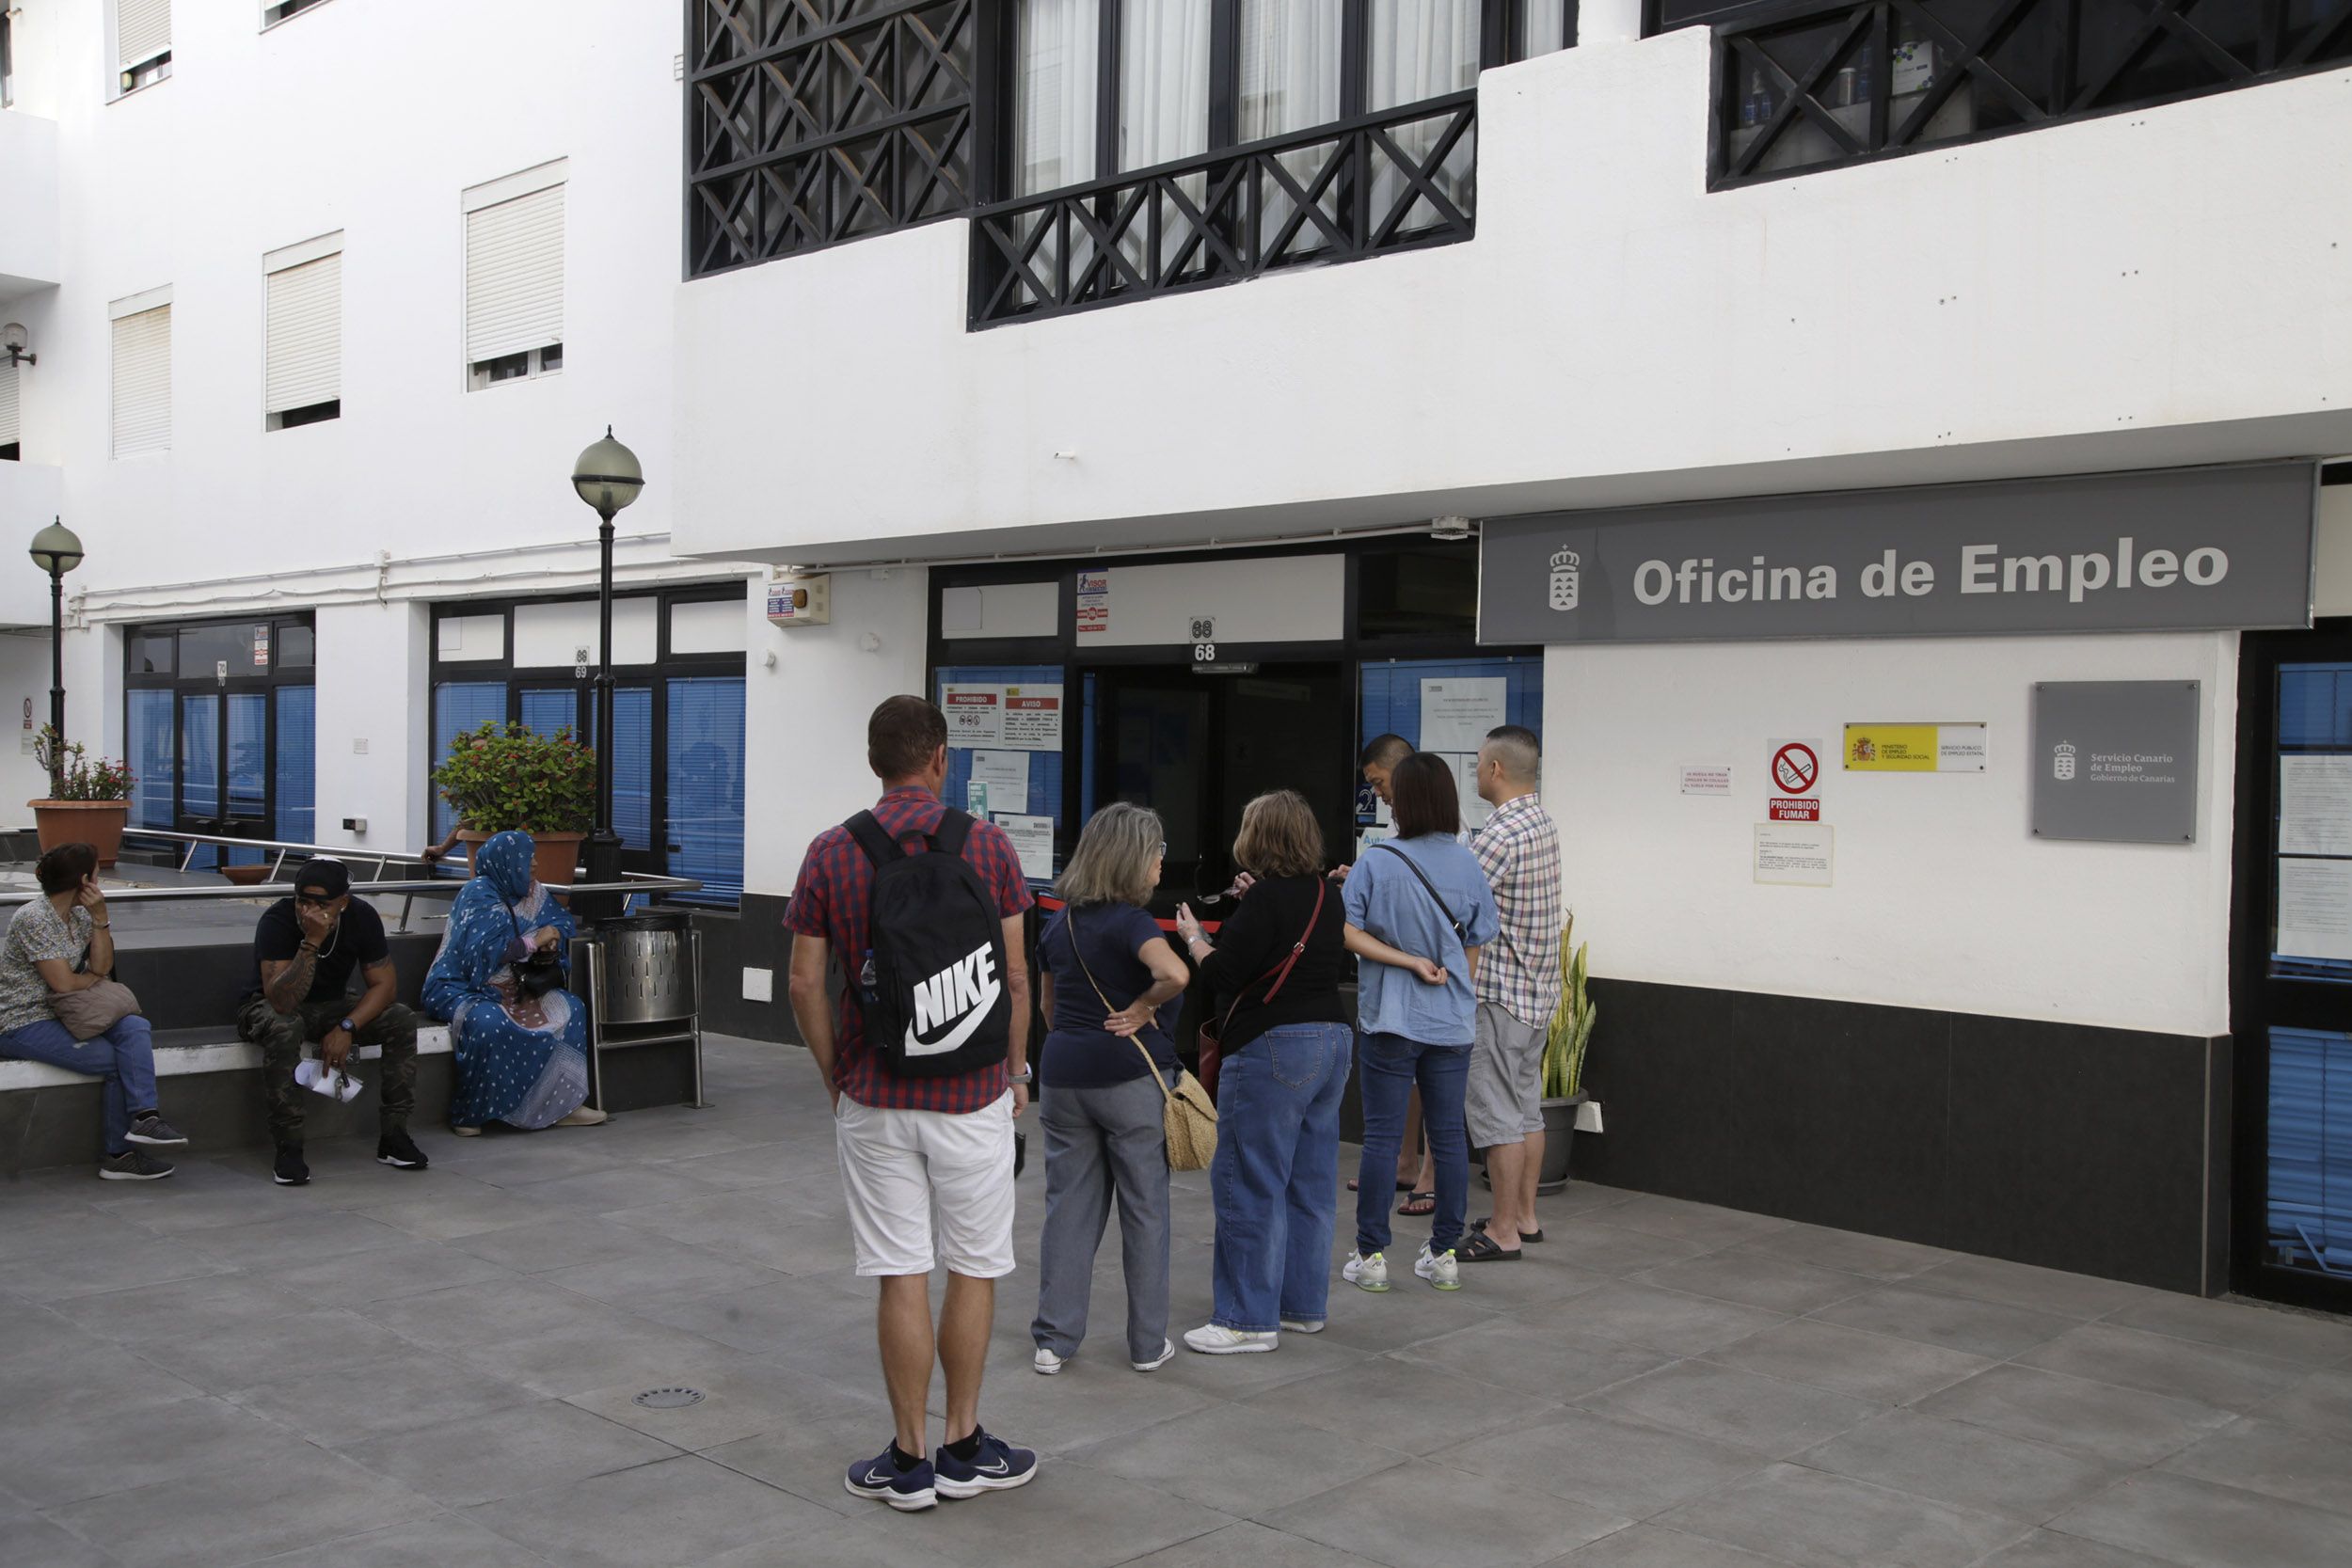 Oficina de Empleo en Lanzarote.  Foto: José Luis Carrasco.